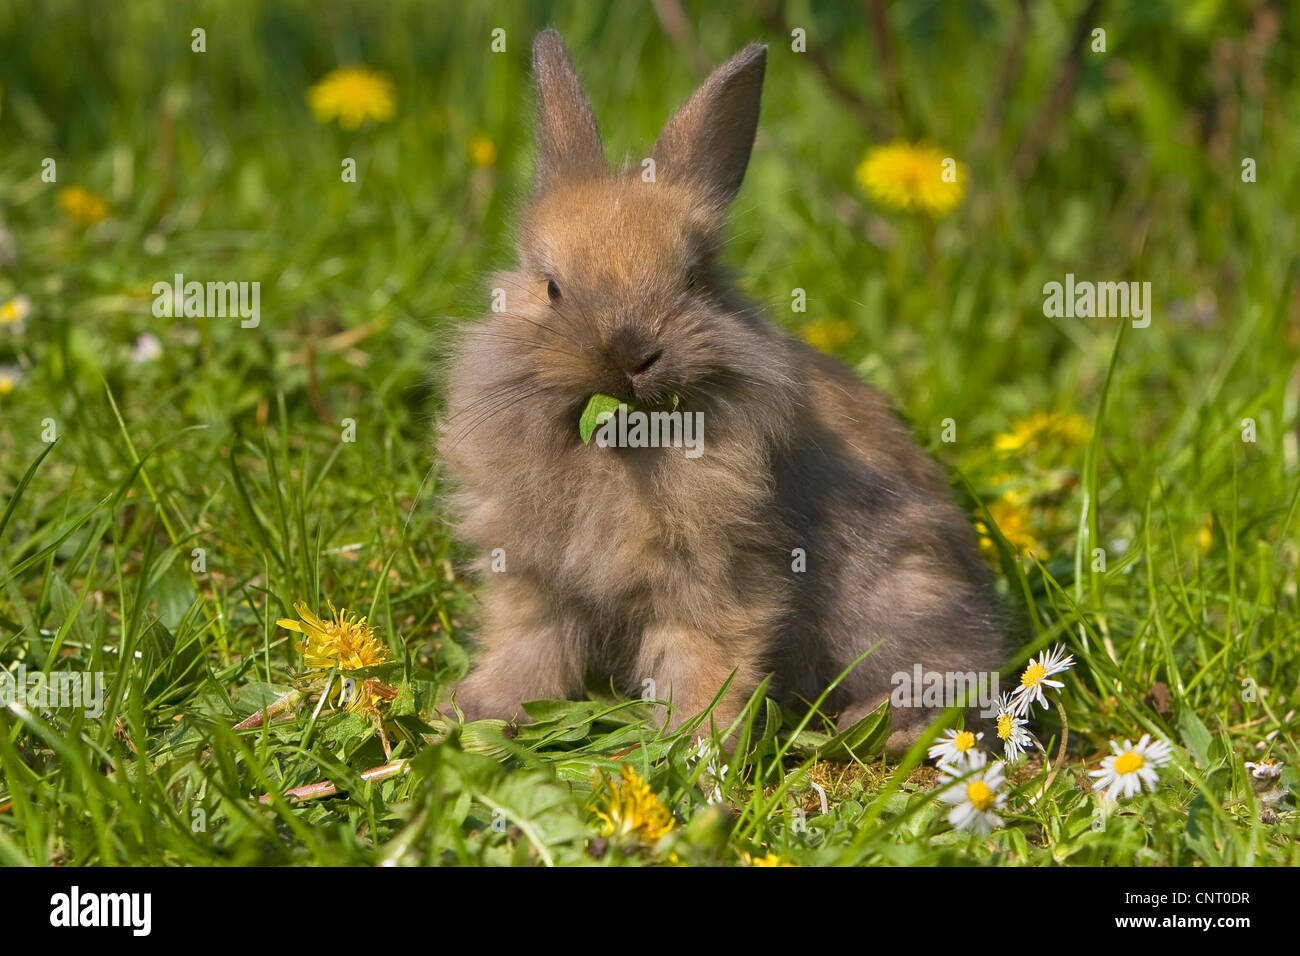 Conejo enano (Oryctolagus cuniculus f. domestica), alimentándose de diente de león en medio de un prado en primavera, Alemania Foto de stock